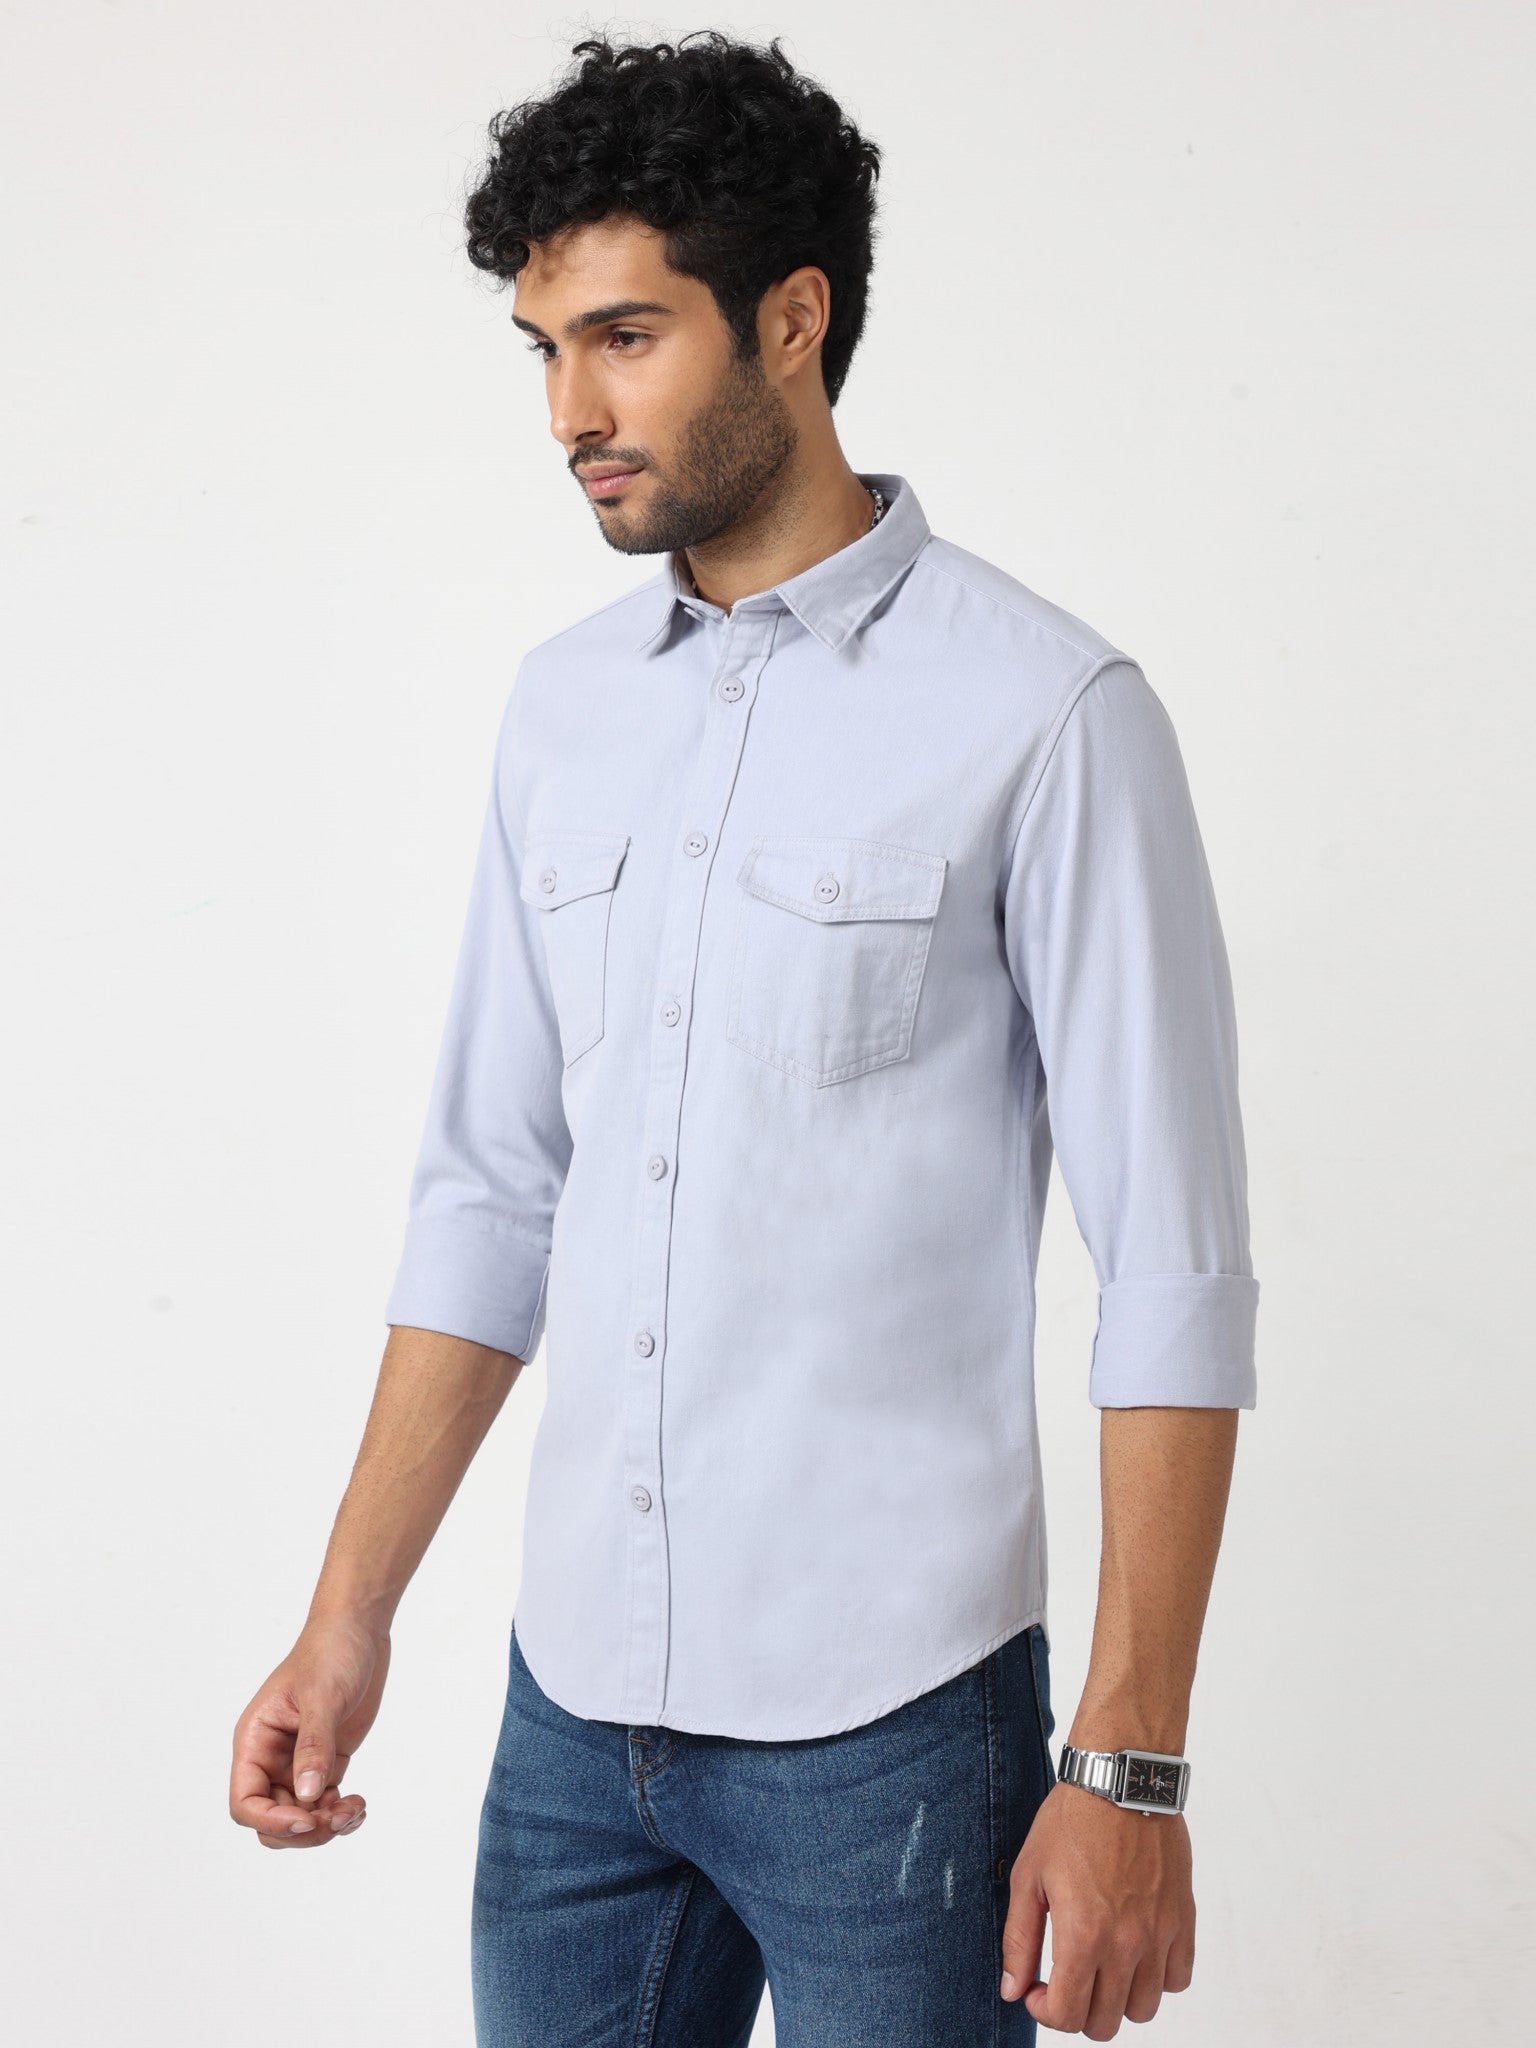 Lumberjack Bluish Grey Shirt for men 